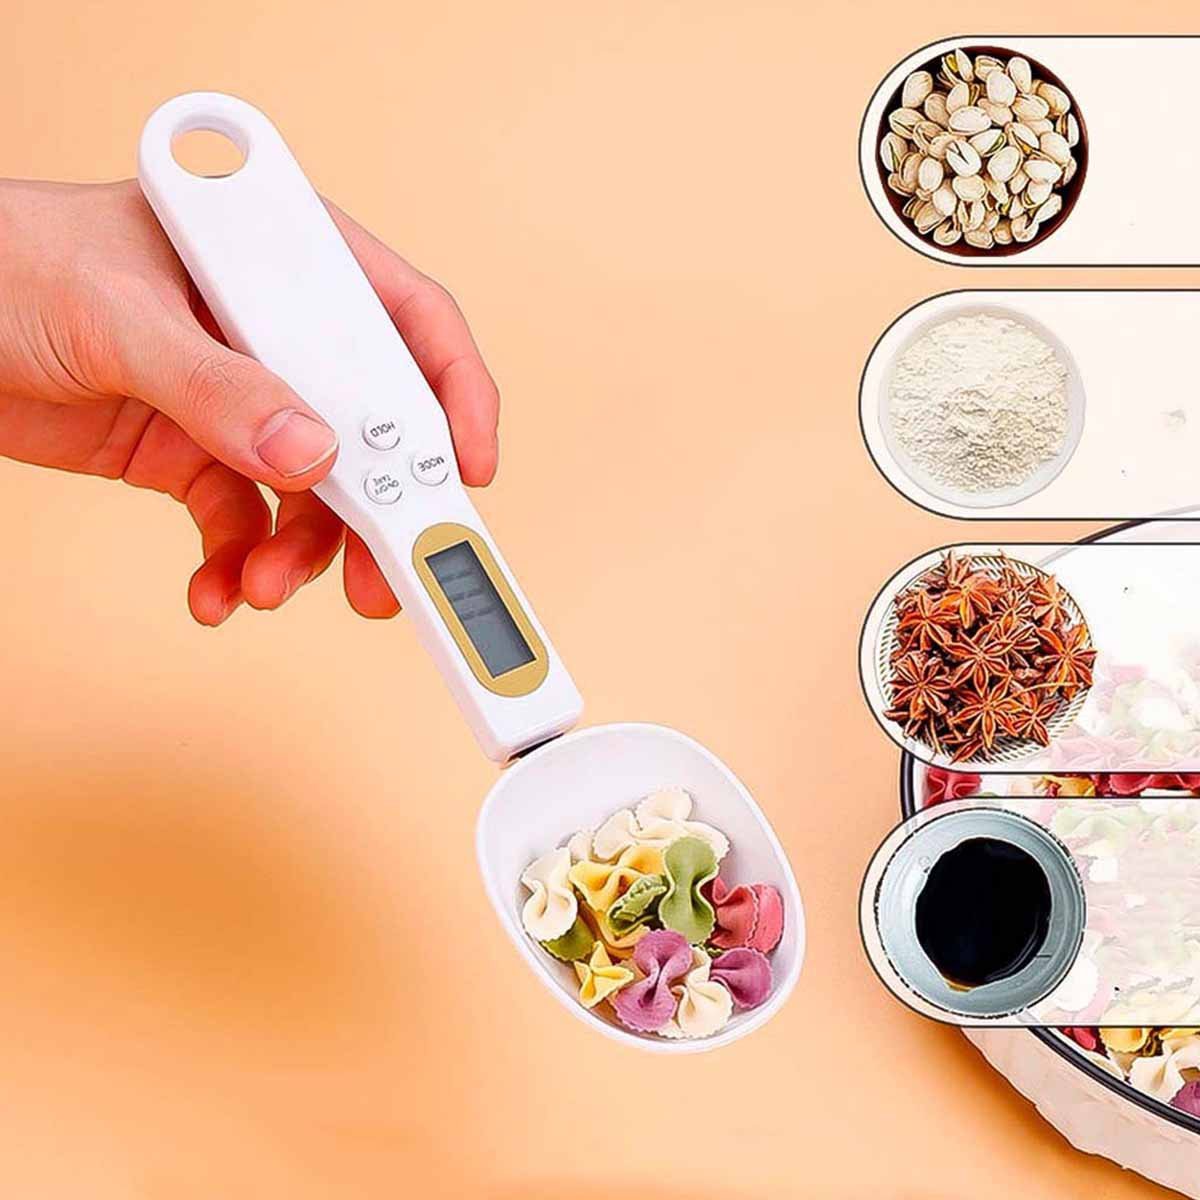 Colher Balança Digital Medidora Lcd Portatil Dosadora Precisao Cozinha Nutricionista Alimento Temper - 6